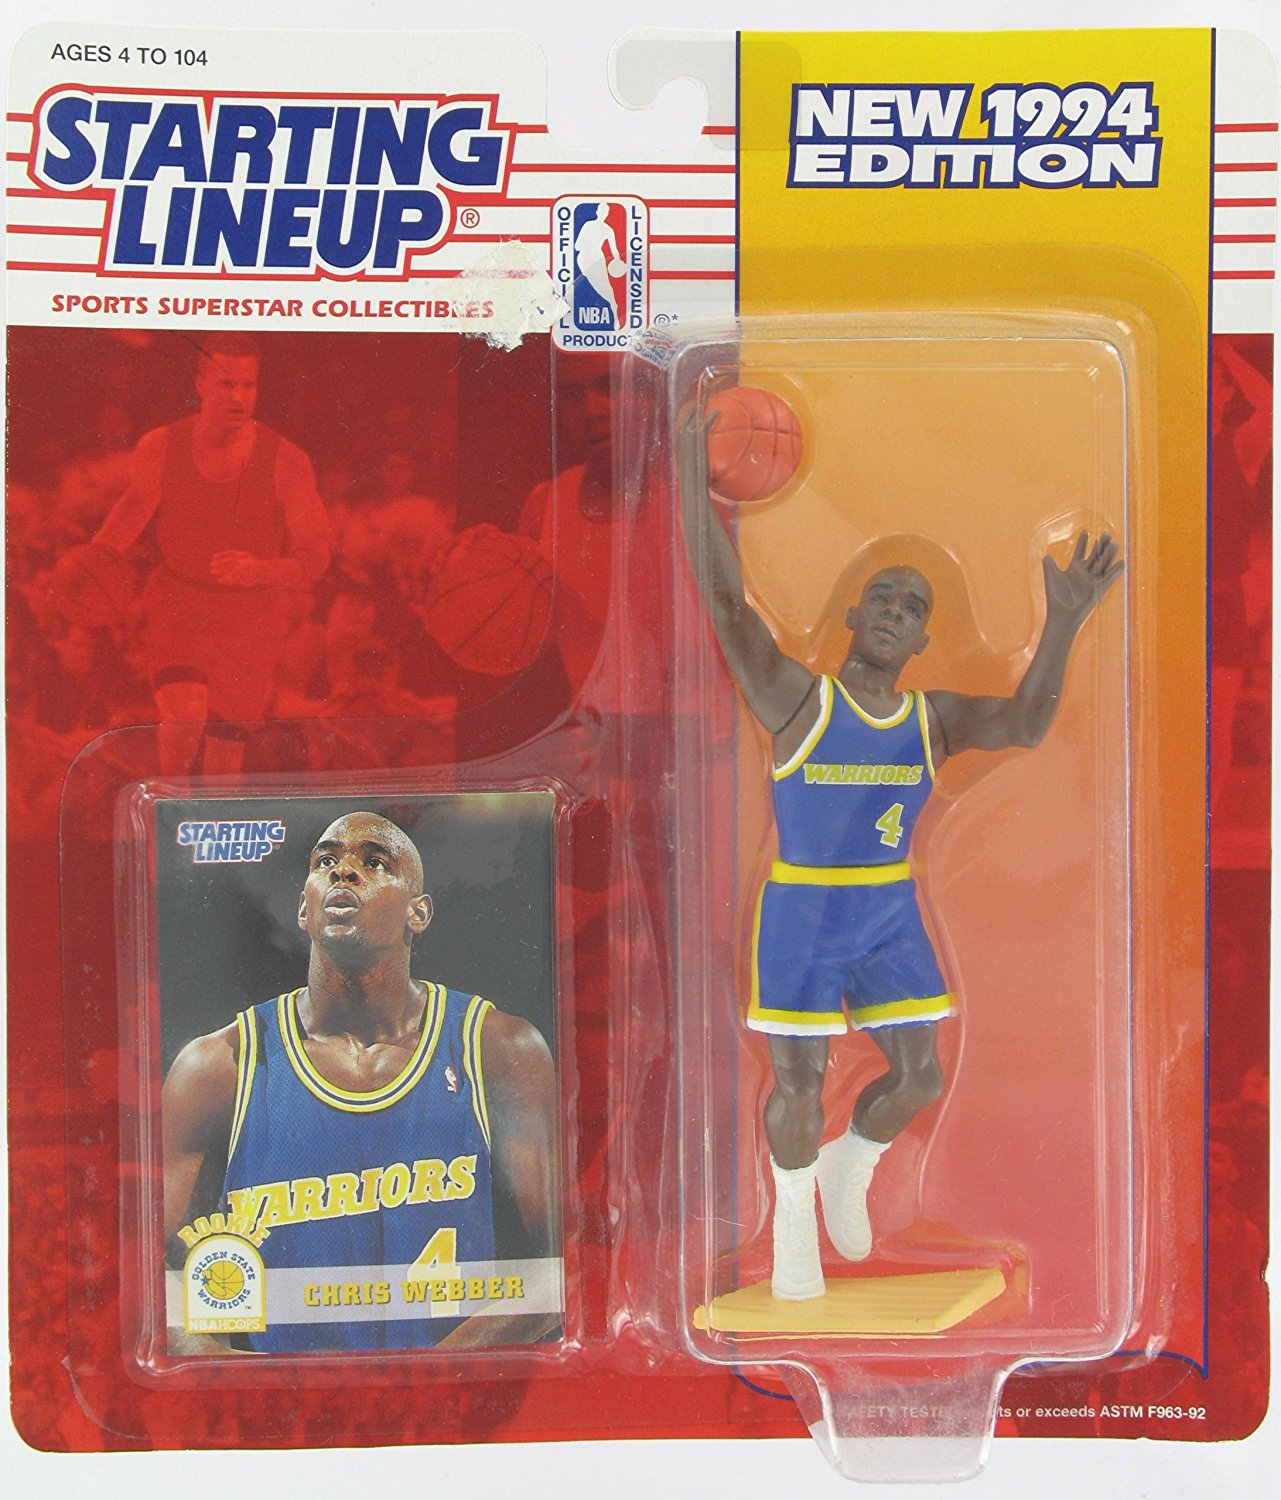 1994 NBA Staring Lineup - Chris Webber - Golden State Warriors